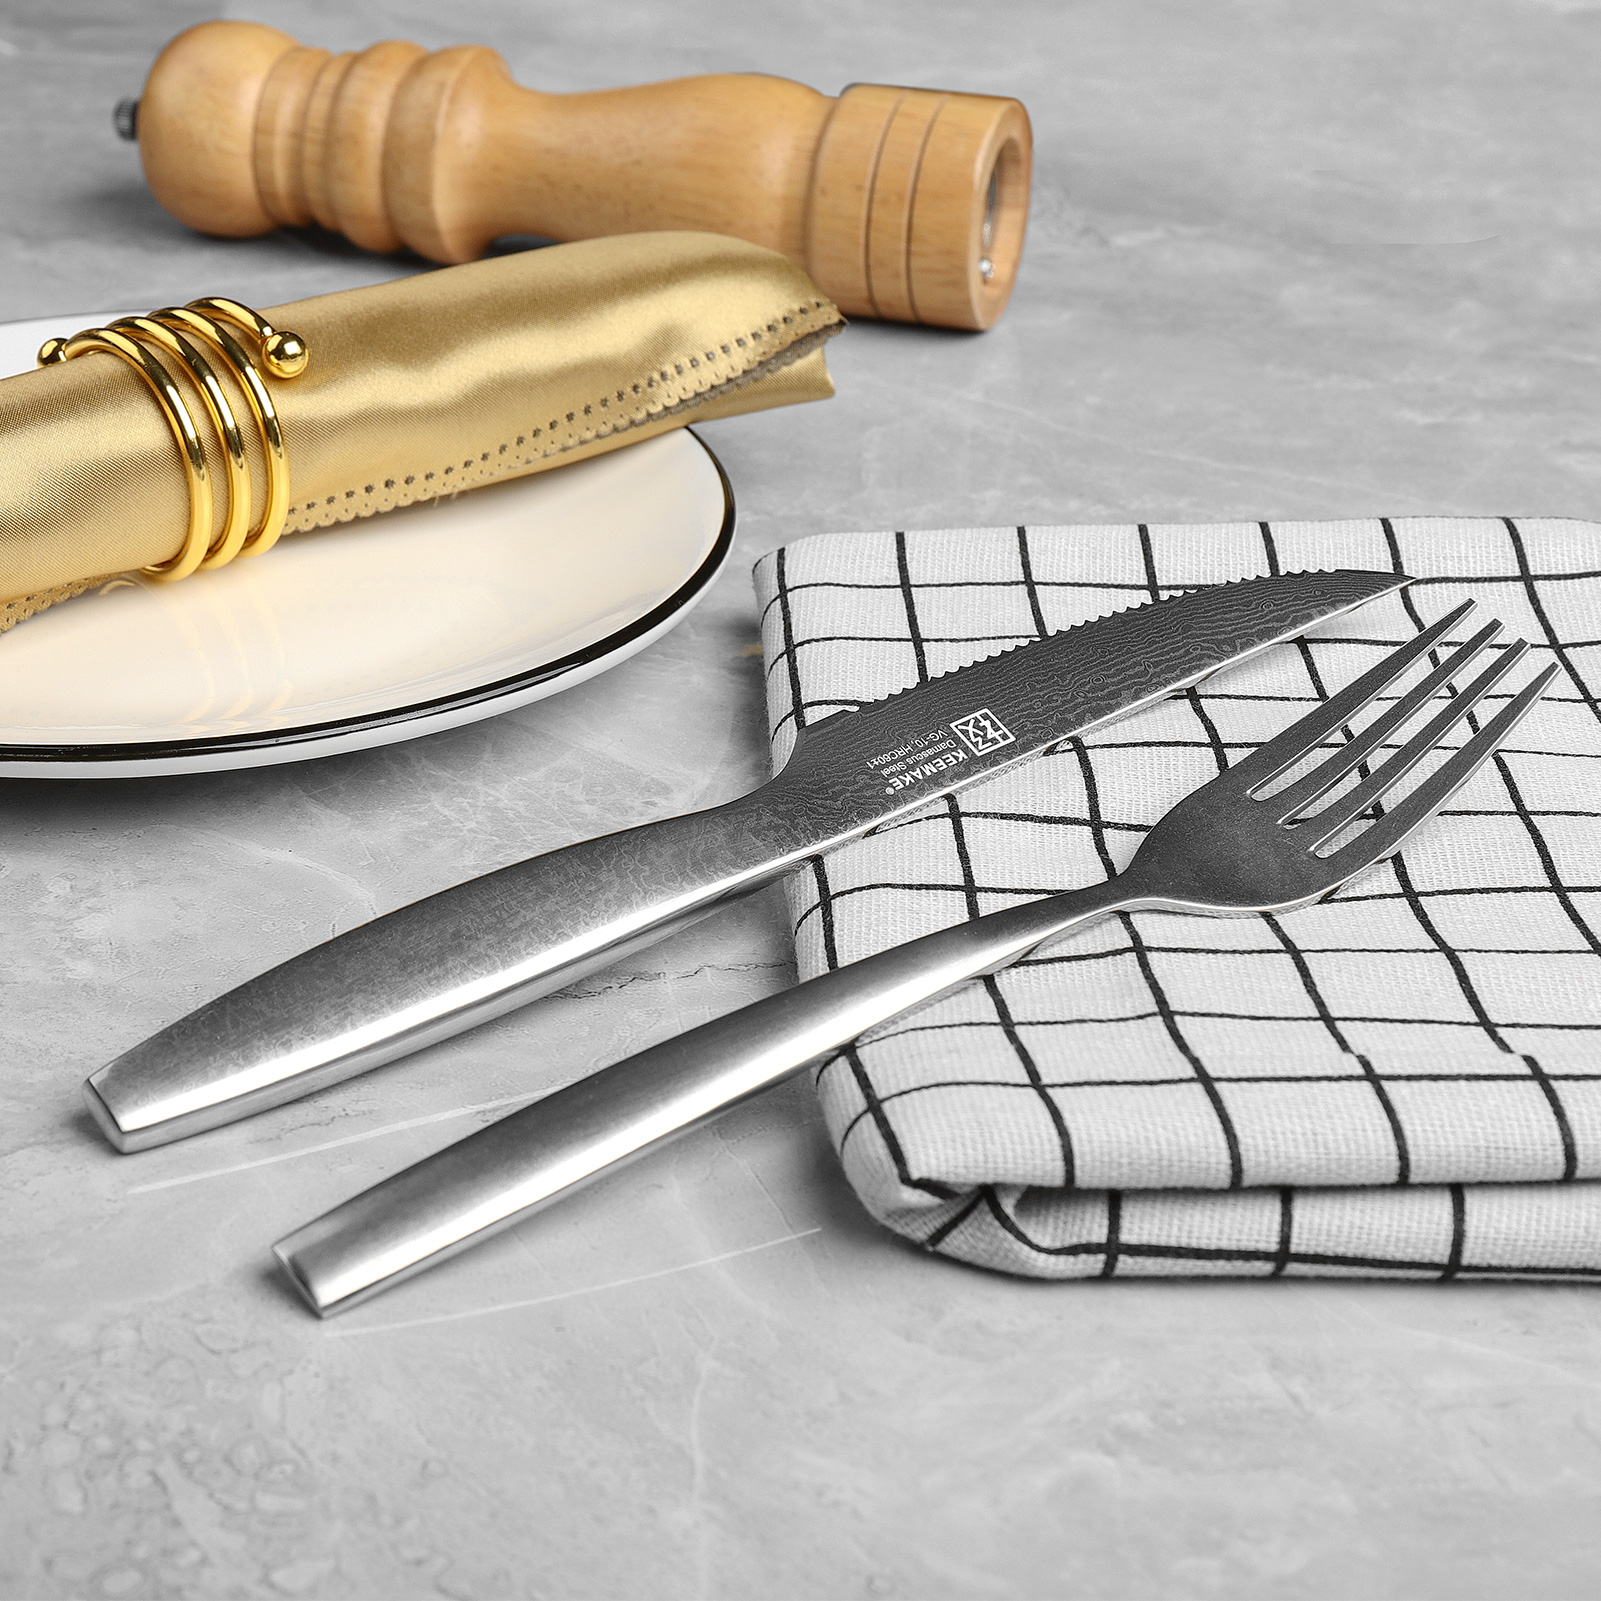 KEEMAKE Unique Design Damascus 2pcs Steak Knives & 2pcs Forks Set With Wooden Box